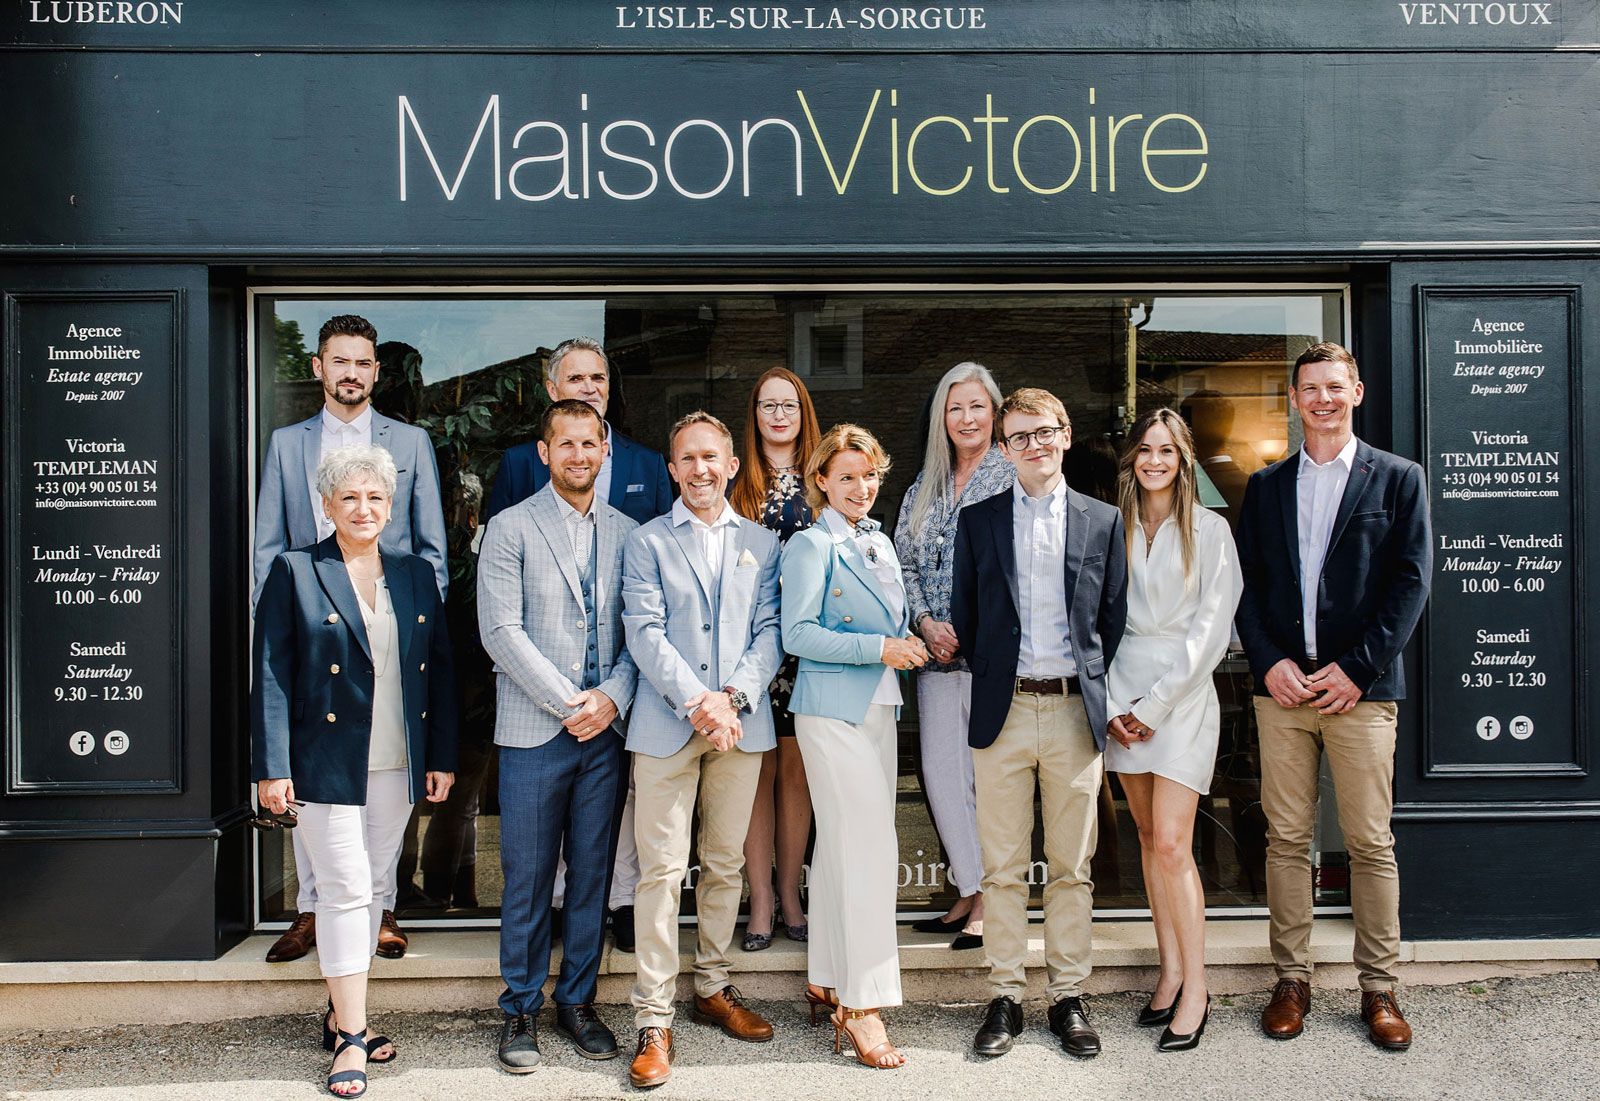 Our team, Maison Victoire Estate Agents